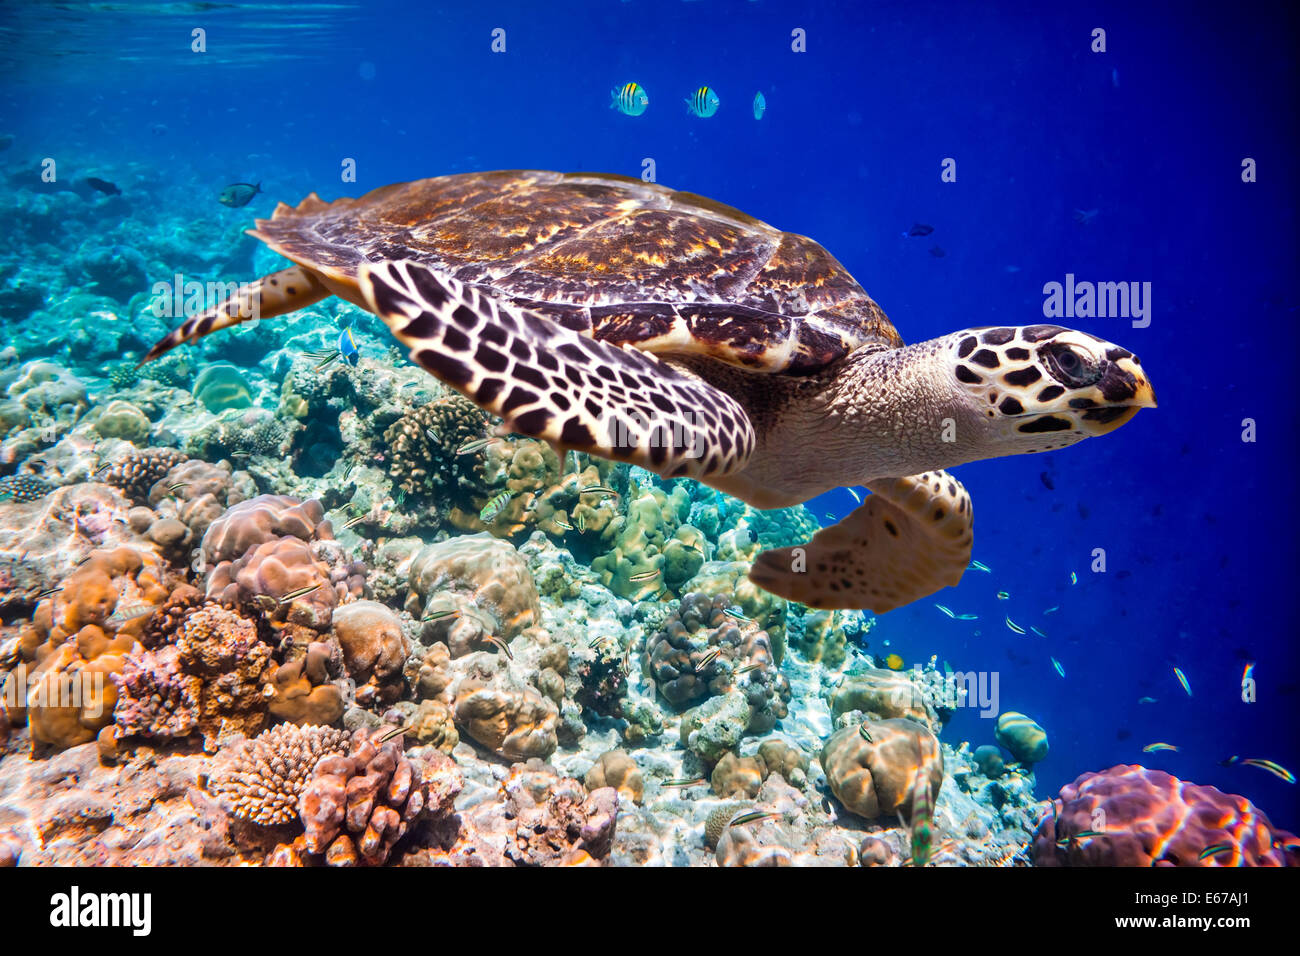 La tortuga carey, Eretmochelys imbricata, flota en el agua. Maldivas arrecifes de coral del Océano Índico. Foto de stock